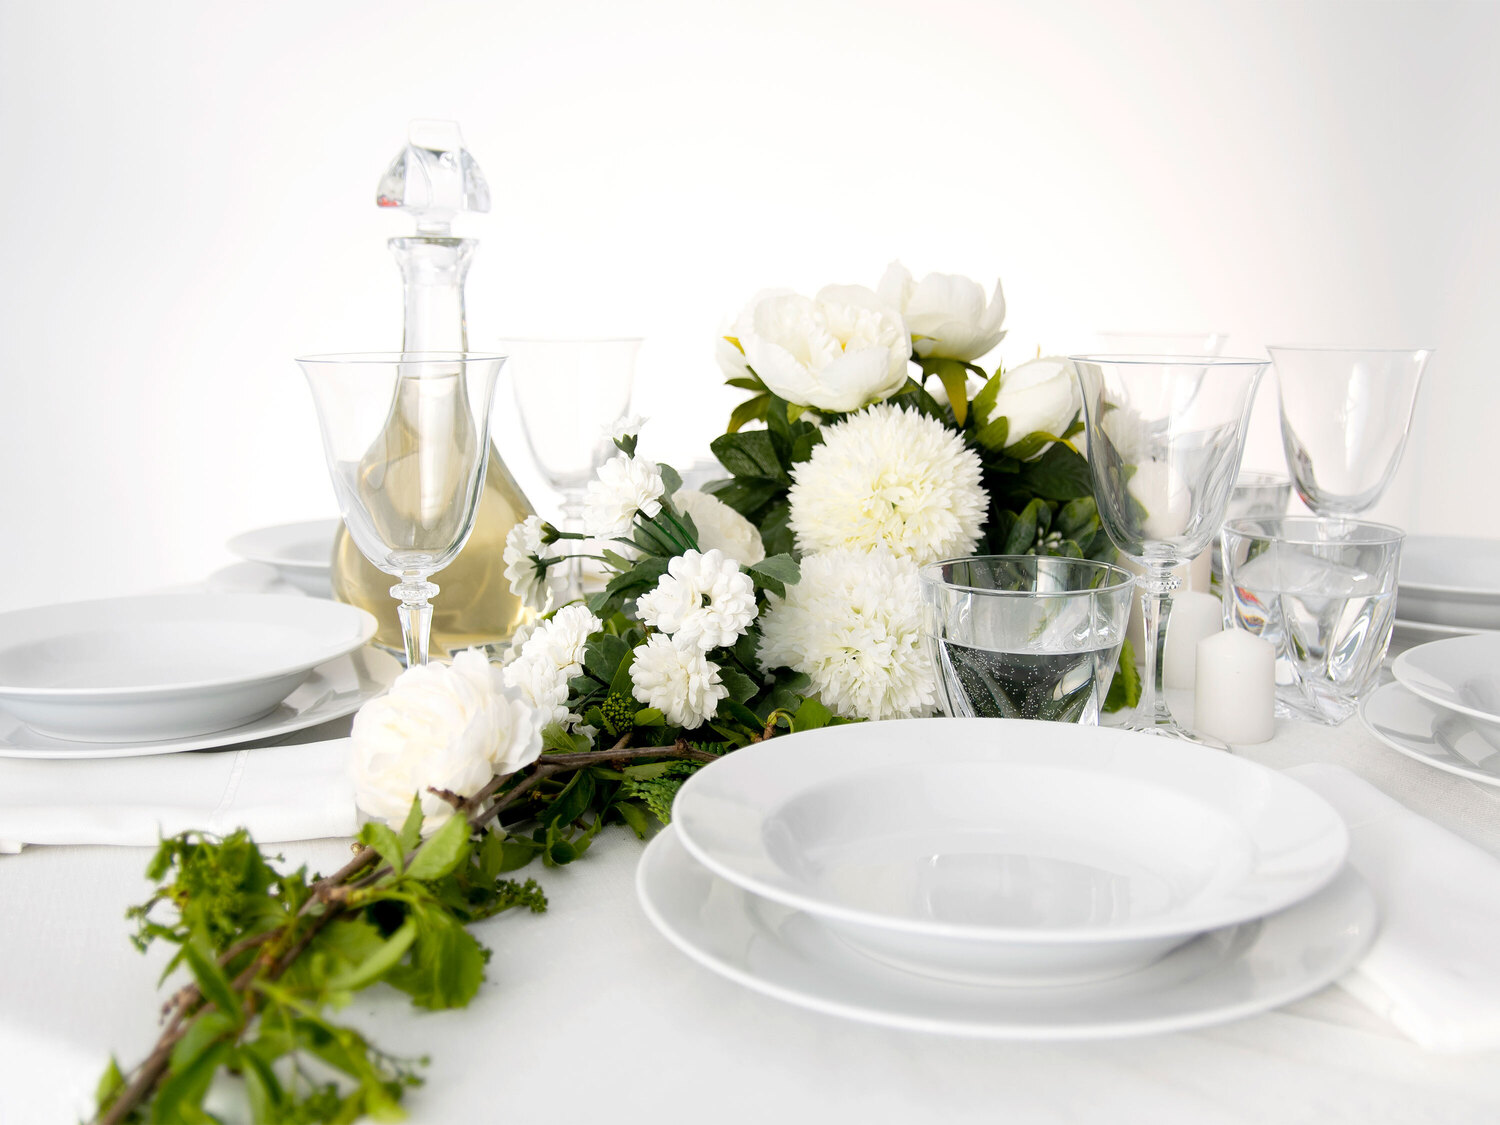 Zestaw obiadowy YVETTE, biały Chodzież porcelana, cena 129,00 PLN 
w zestawie:
- ...